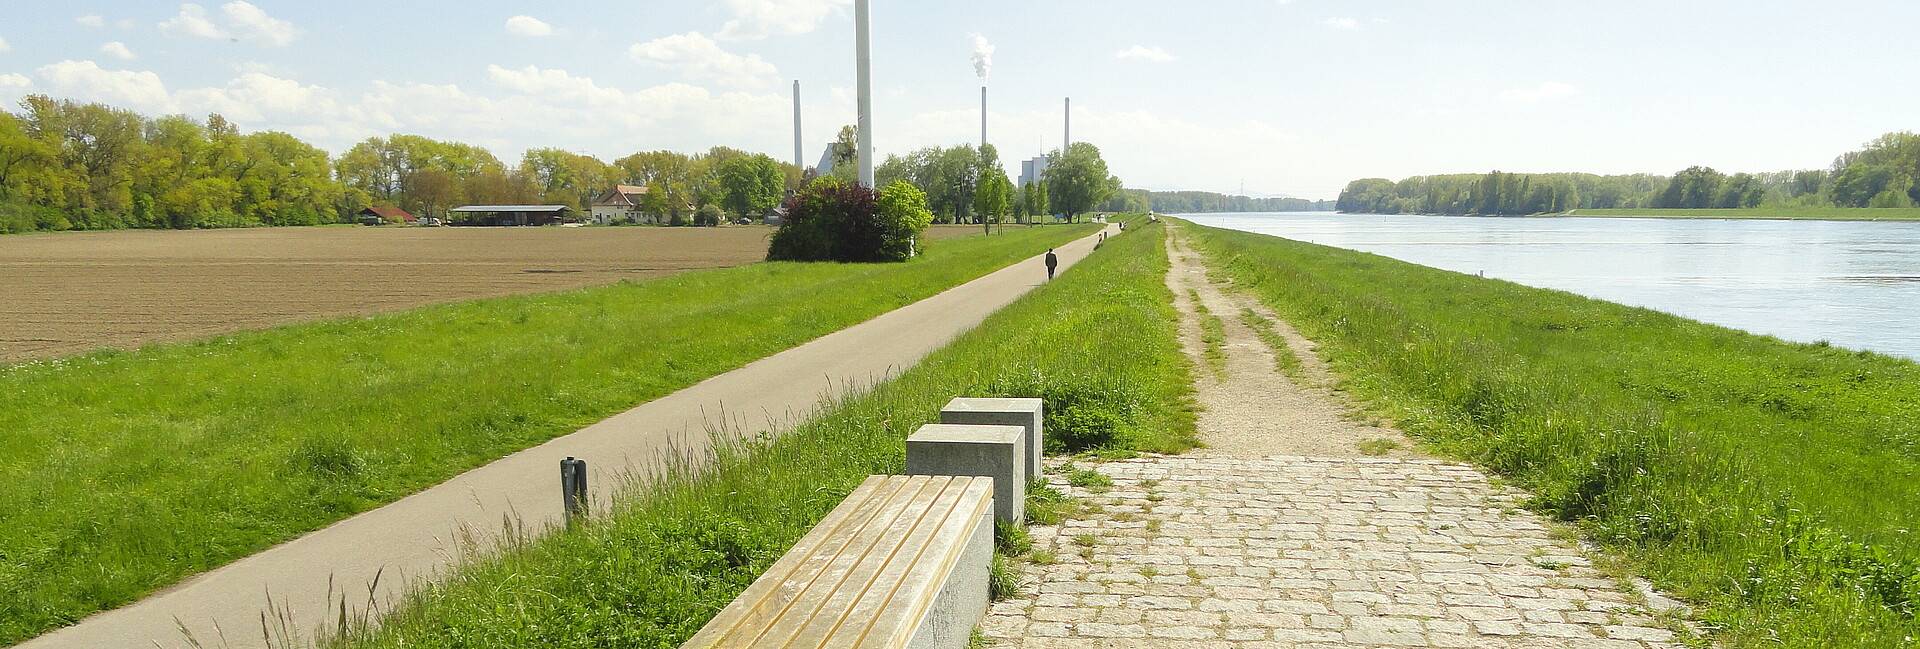 Auf dem Bild sieht man rechts den Rhein und links Wiesen und das Hofgut Maxau. Entlang des Rheins sieht man den unbefestigten Weg auf dem Rheindamm (rechts) sowie den befestigten Rad- und Fußweg am Dammfuß (links), mit Fußgänger. In Hintergrund befindet sich das Rheinhafen-Dampfkraftwerk, im Vordergrund einige Sitzgelegenheiten. Mittig, allerdings oben angeschnitten, befindet sich ein Windrad. 